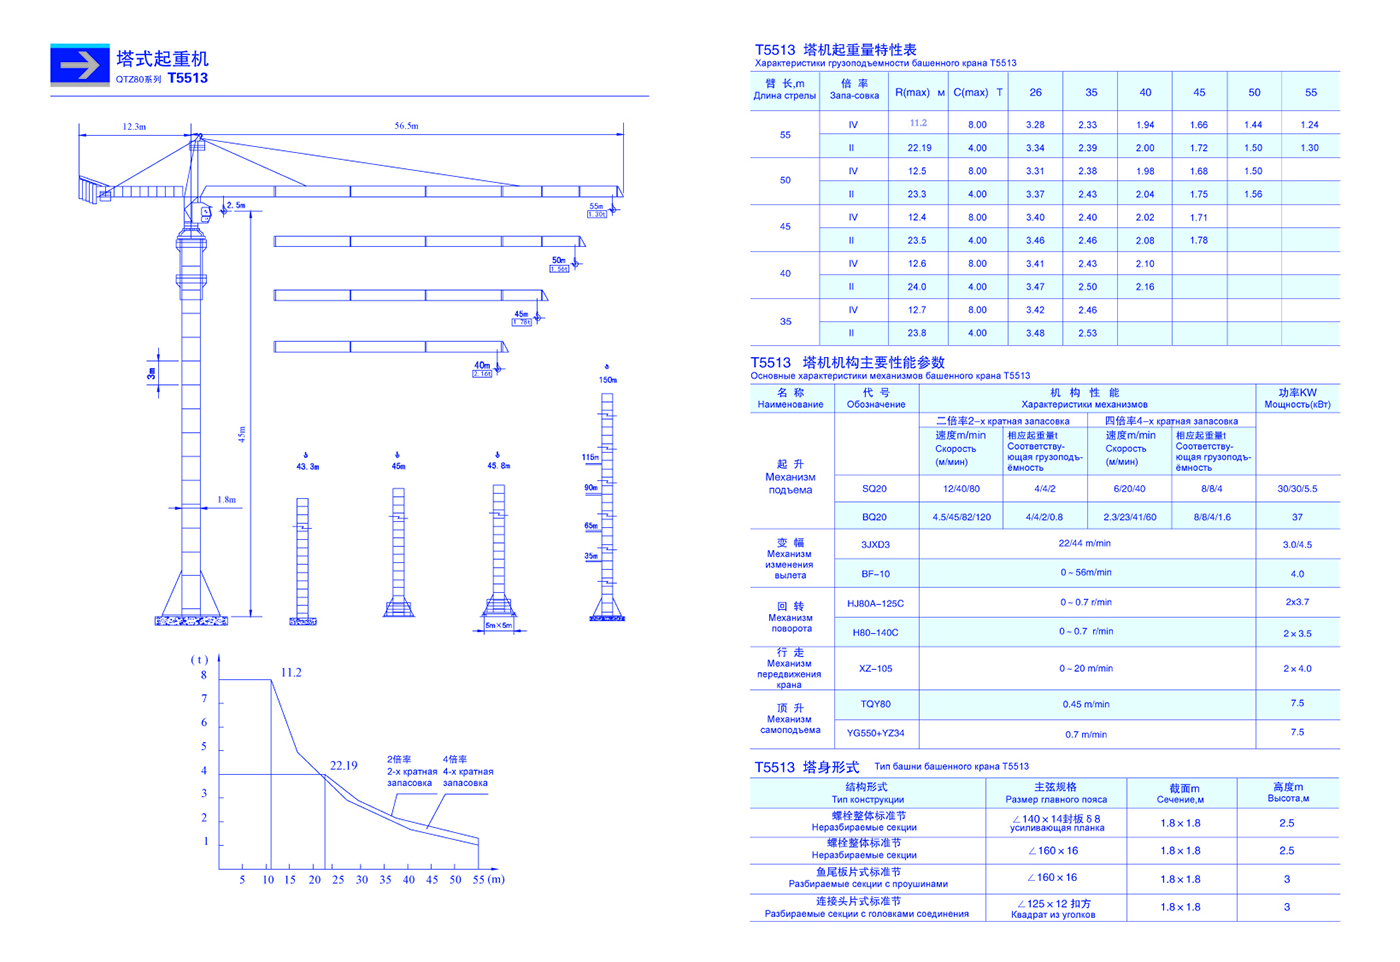 Башенный кран qtz-160: 63, fo 23b, 145, 125, 80, технические характеристики